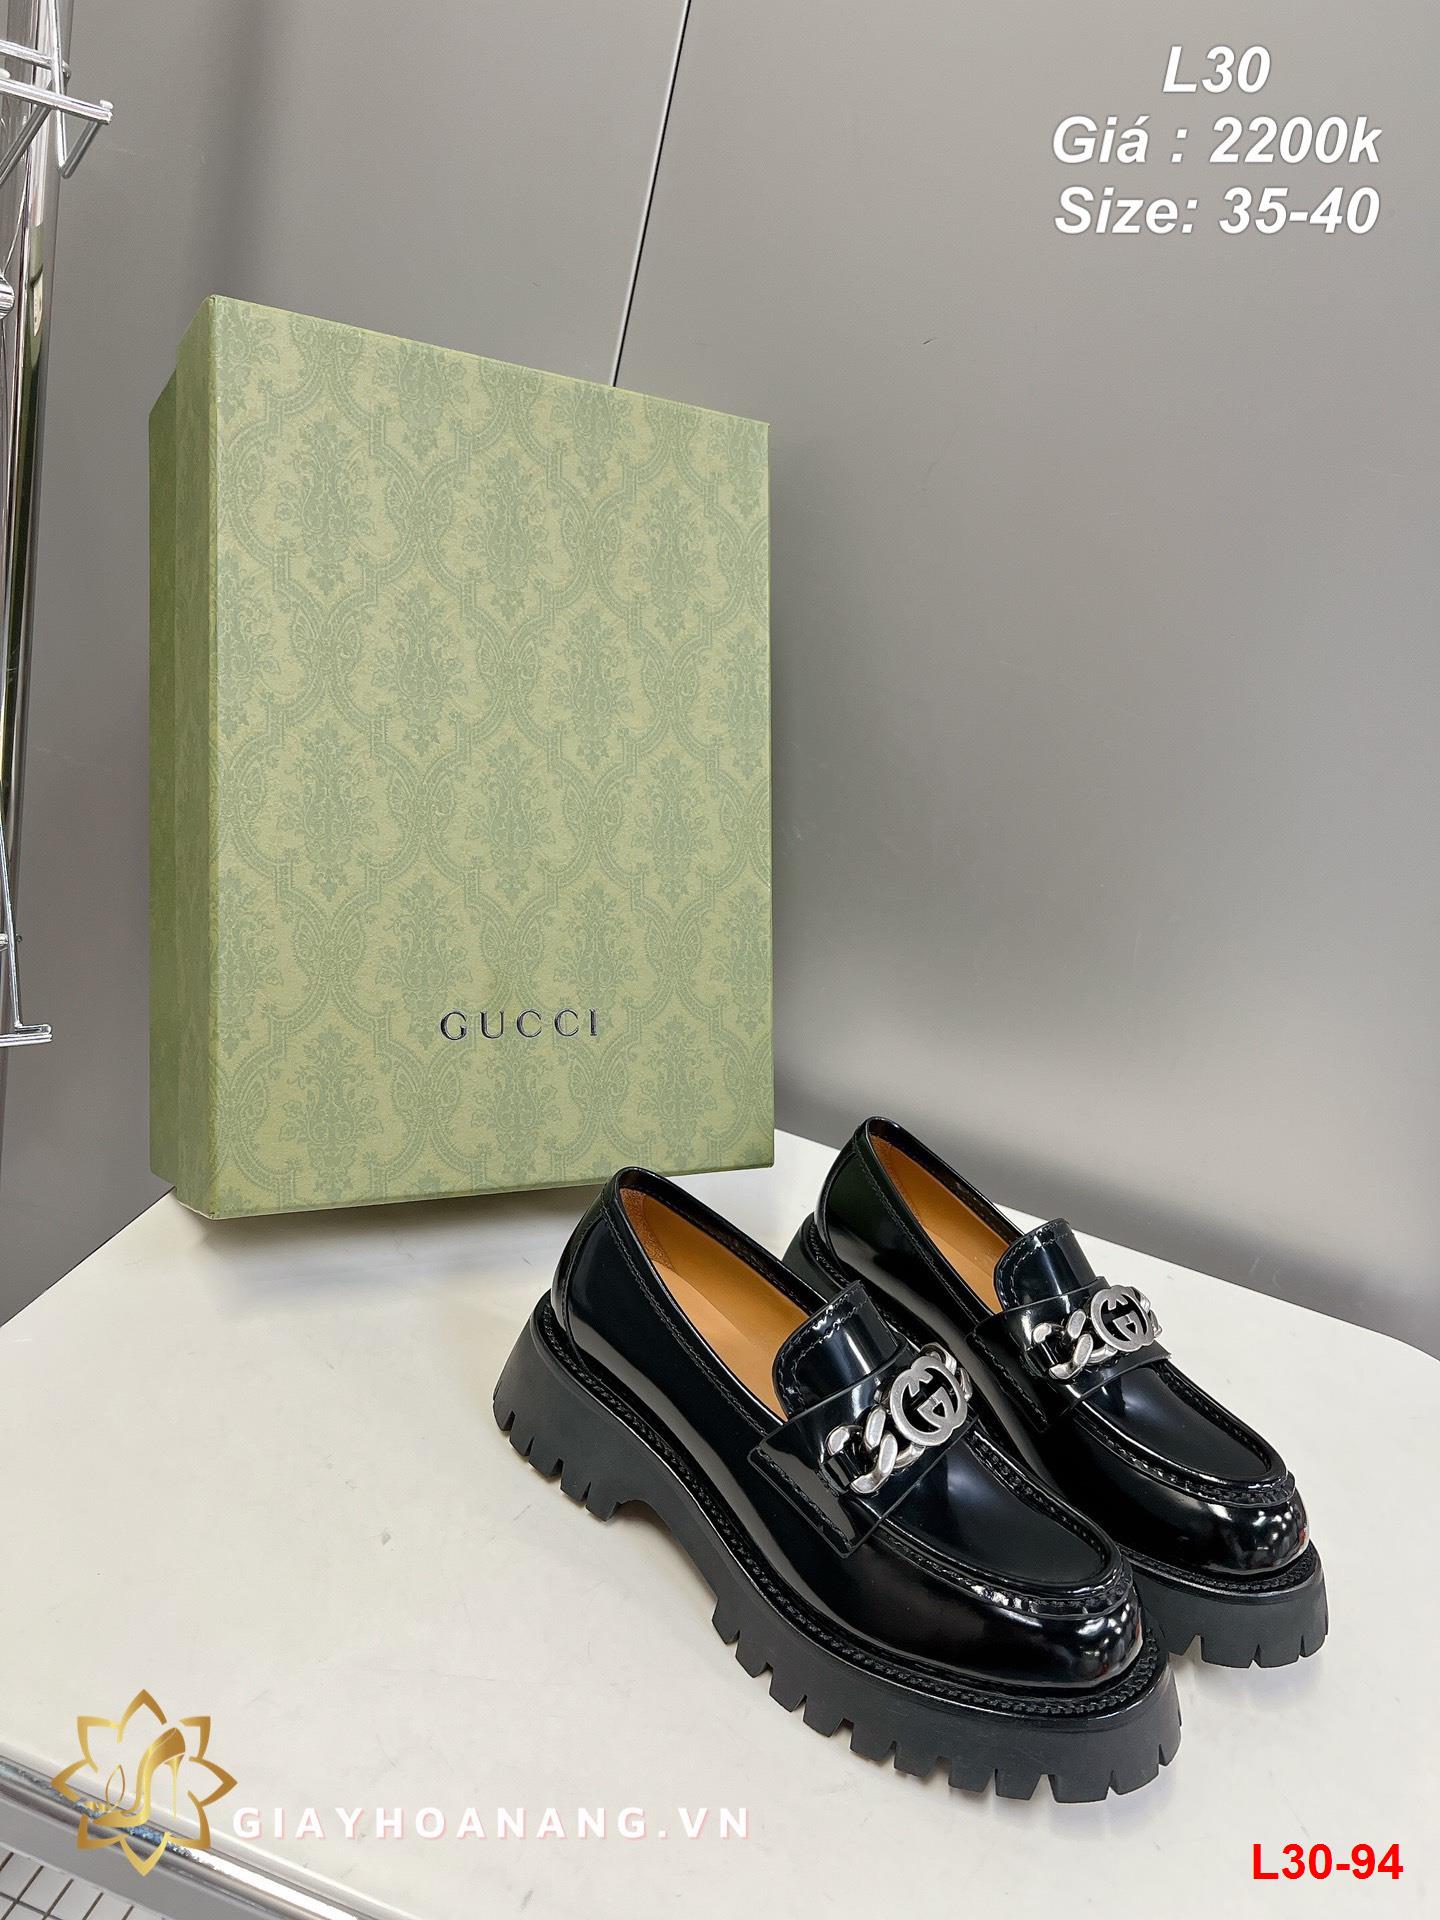 L30-94 Gucci giày lười siêu cấp